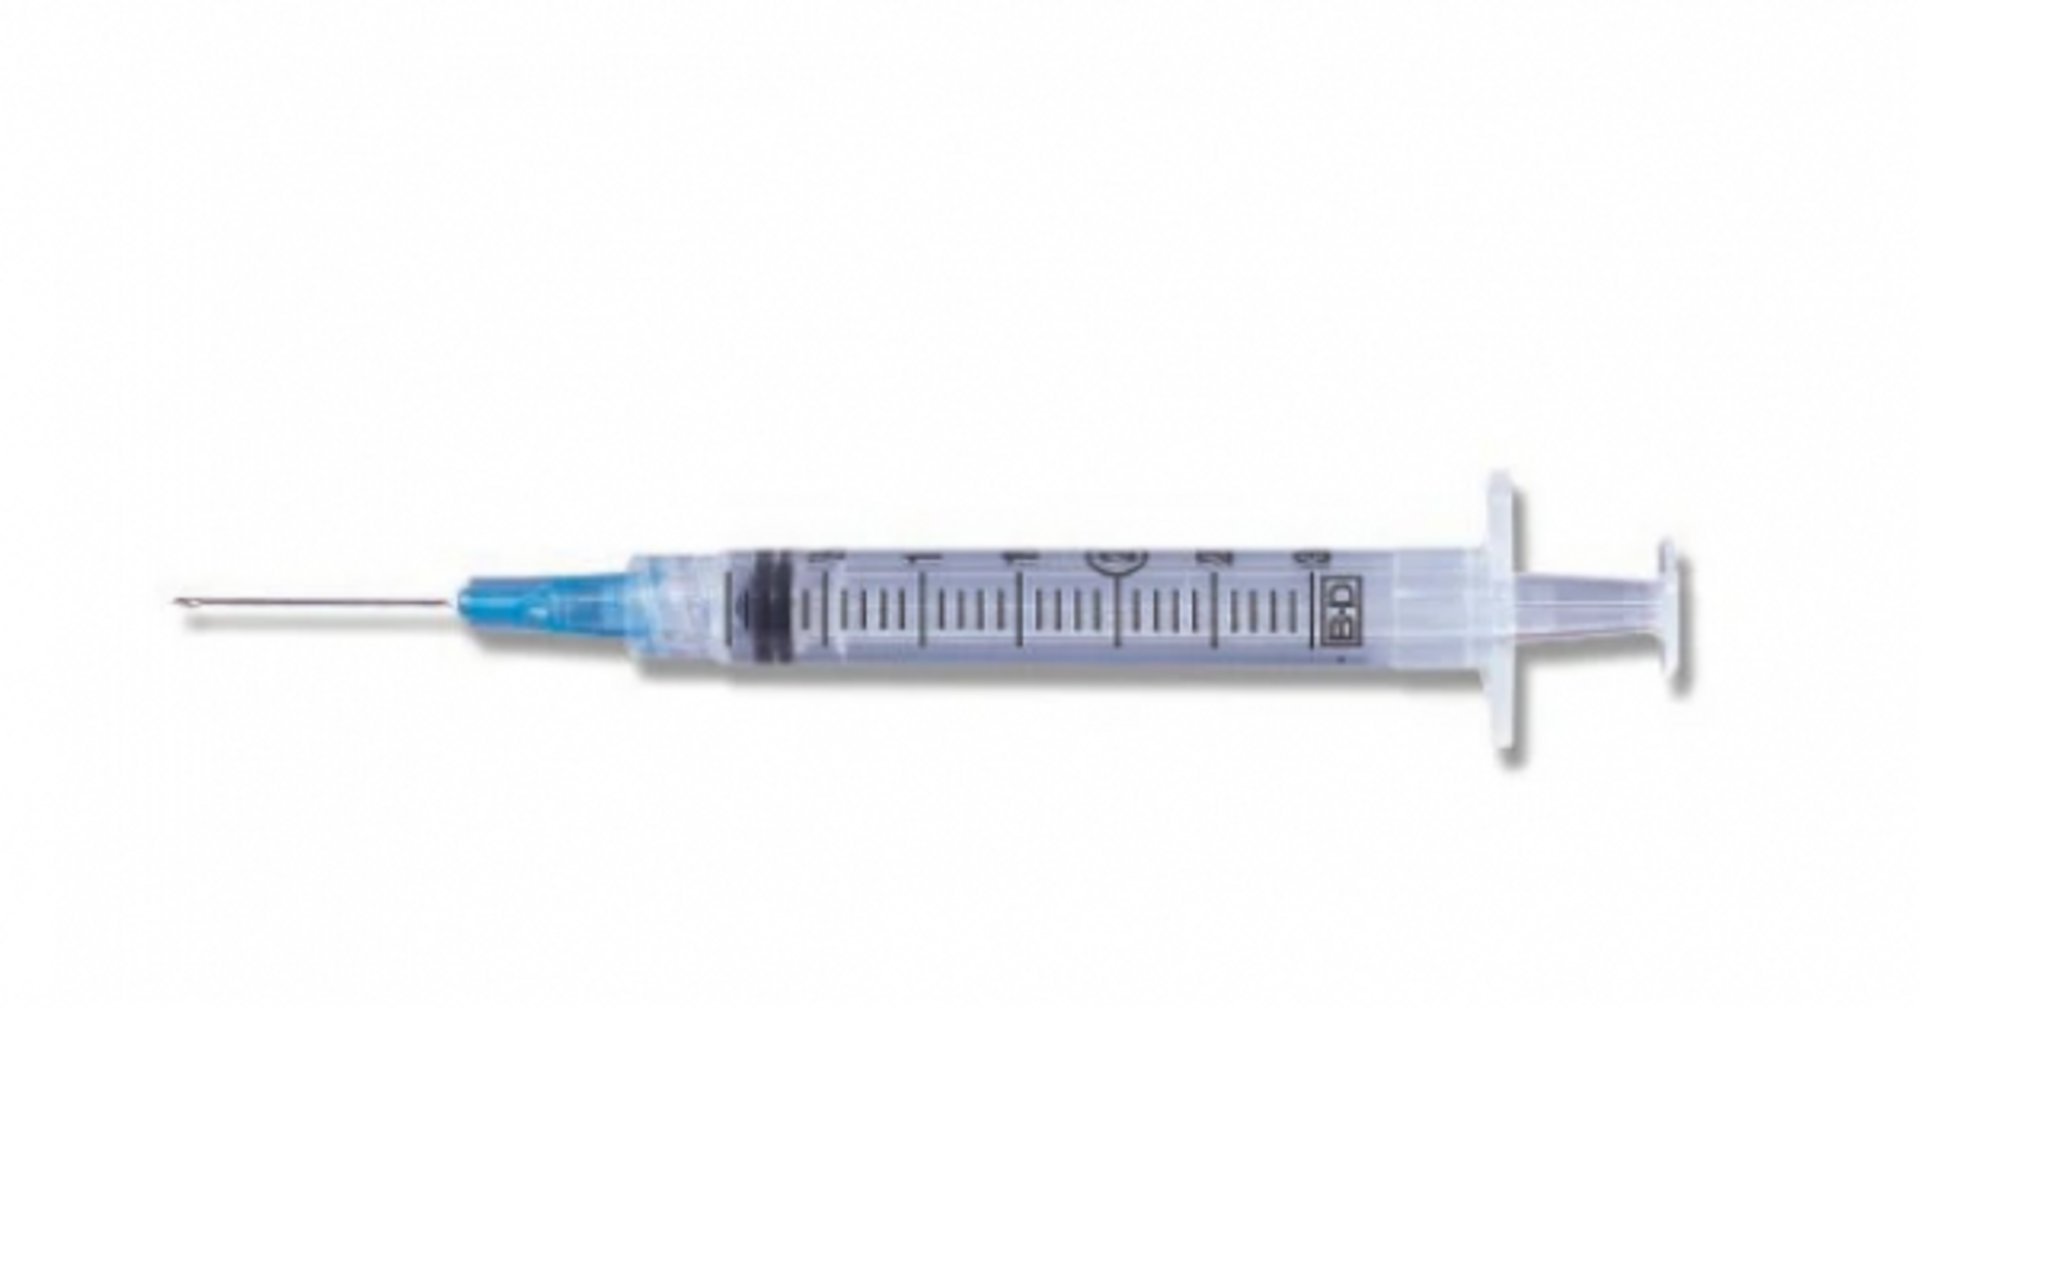 BD Syringe 3ml 21 Gauge 1 Inch Needle 100/box (309575)